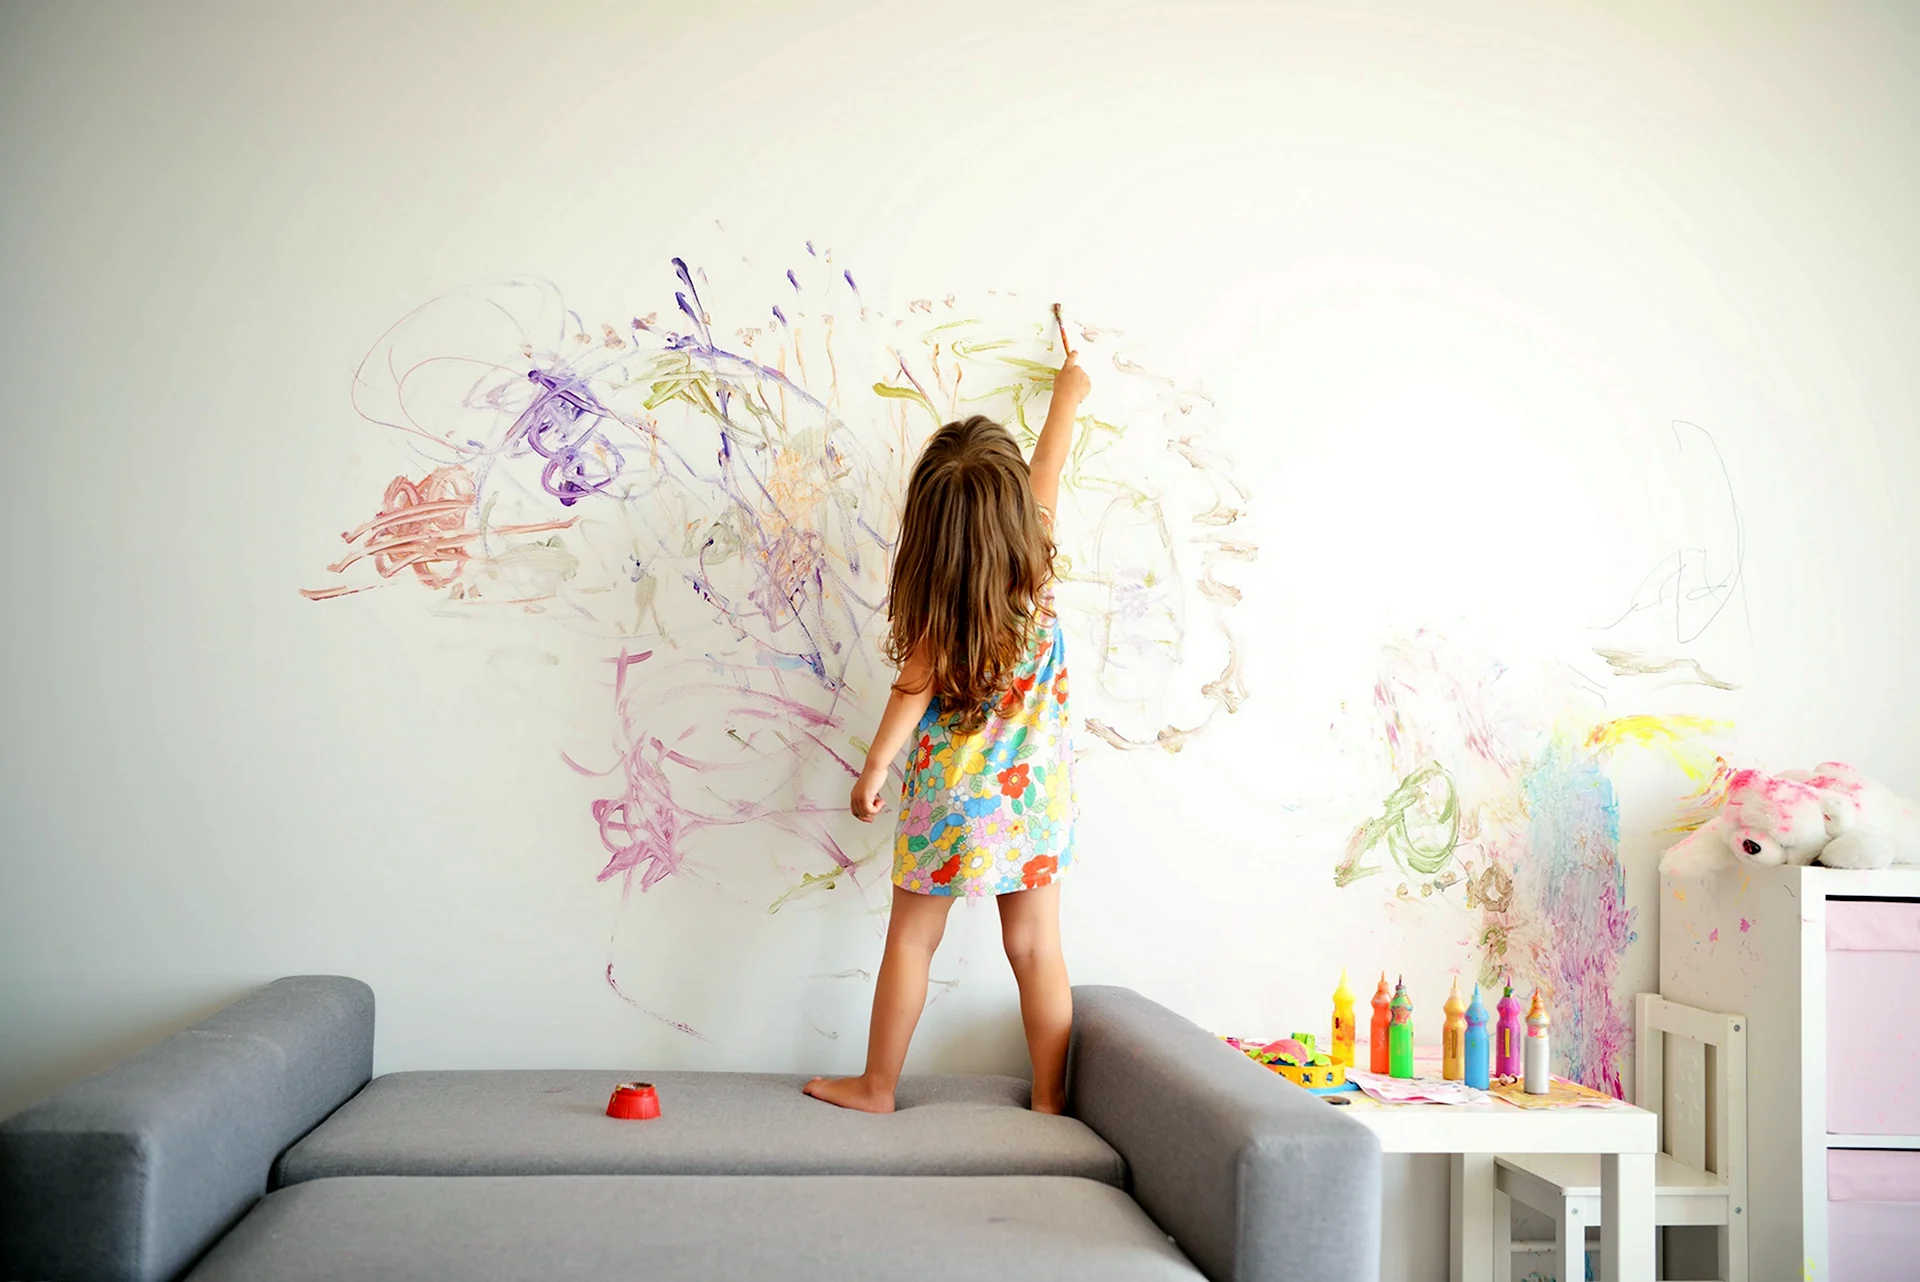 Ребенок рисует на стене